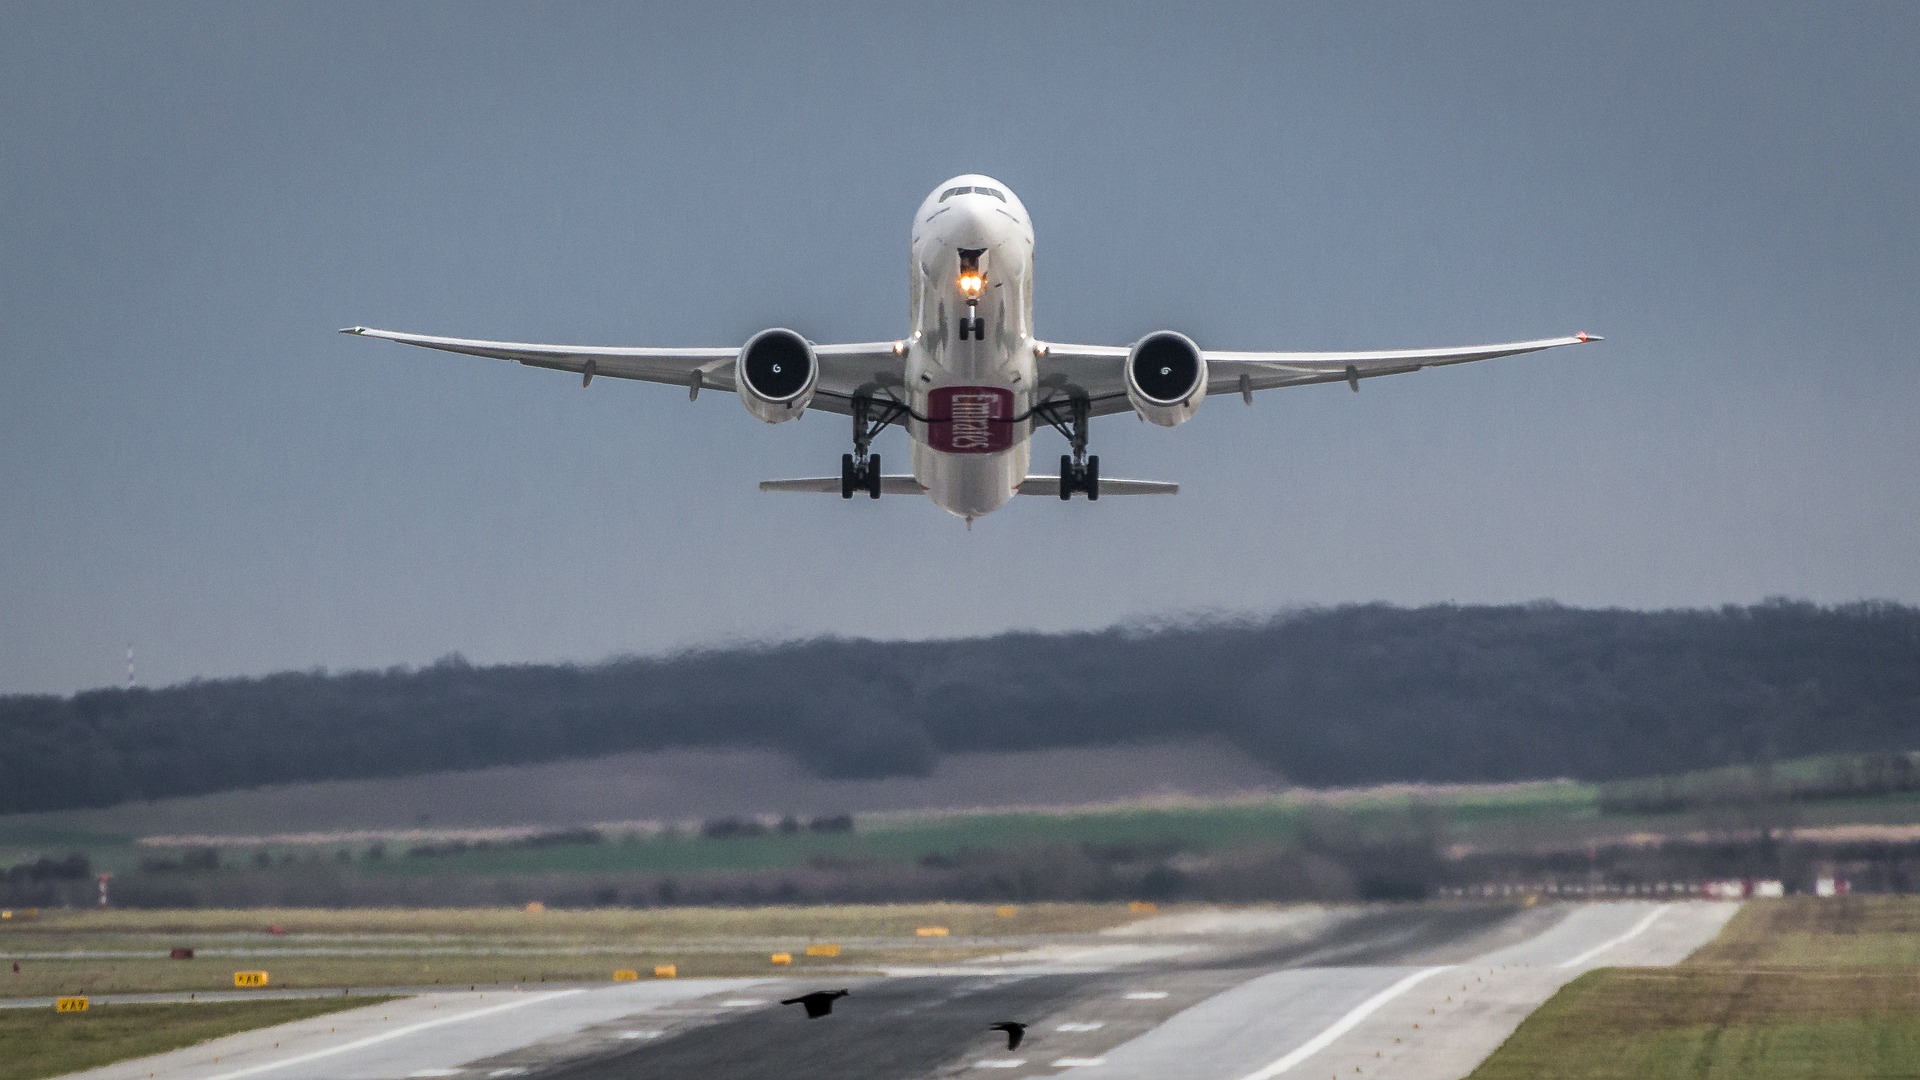 Phi cơ sẽ tiêu thụ nhiều nhiên liệu hơn trong quá trình cất cánh và hạ cánh. (Ảnh: Pixabay)